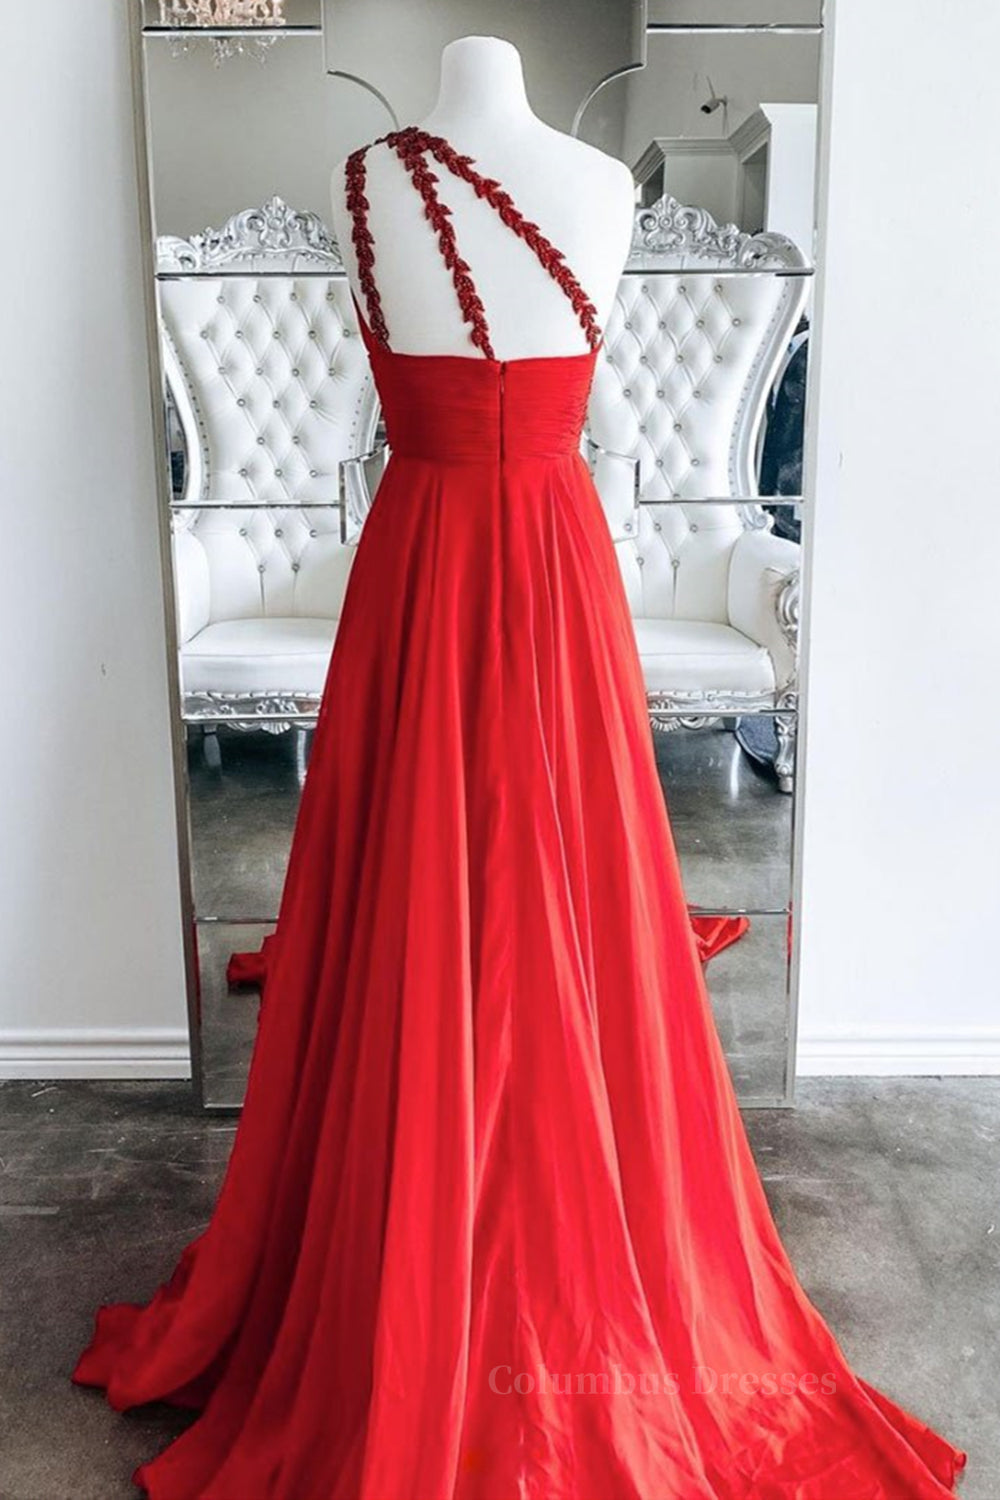 Elegant Wedding Dress, One Shoulder Open Back Red Long Prom Dress, Backless Red Formal Dress, Red Evening Dress